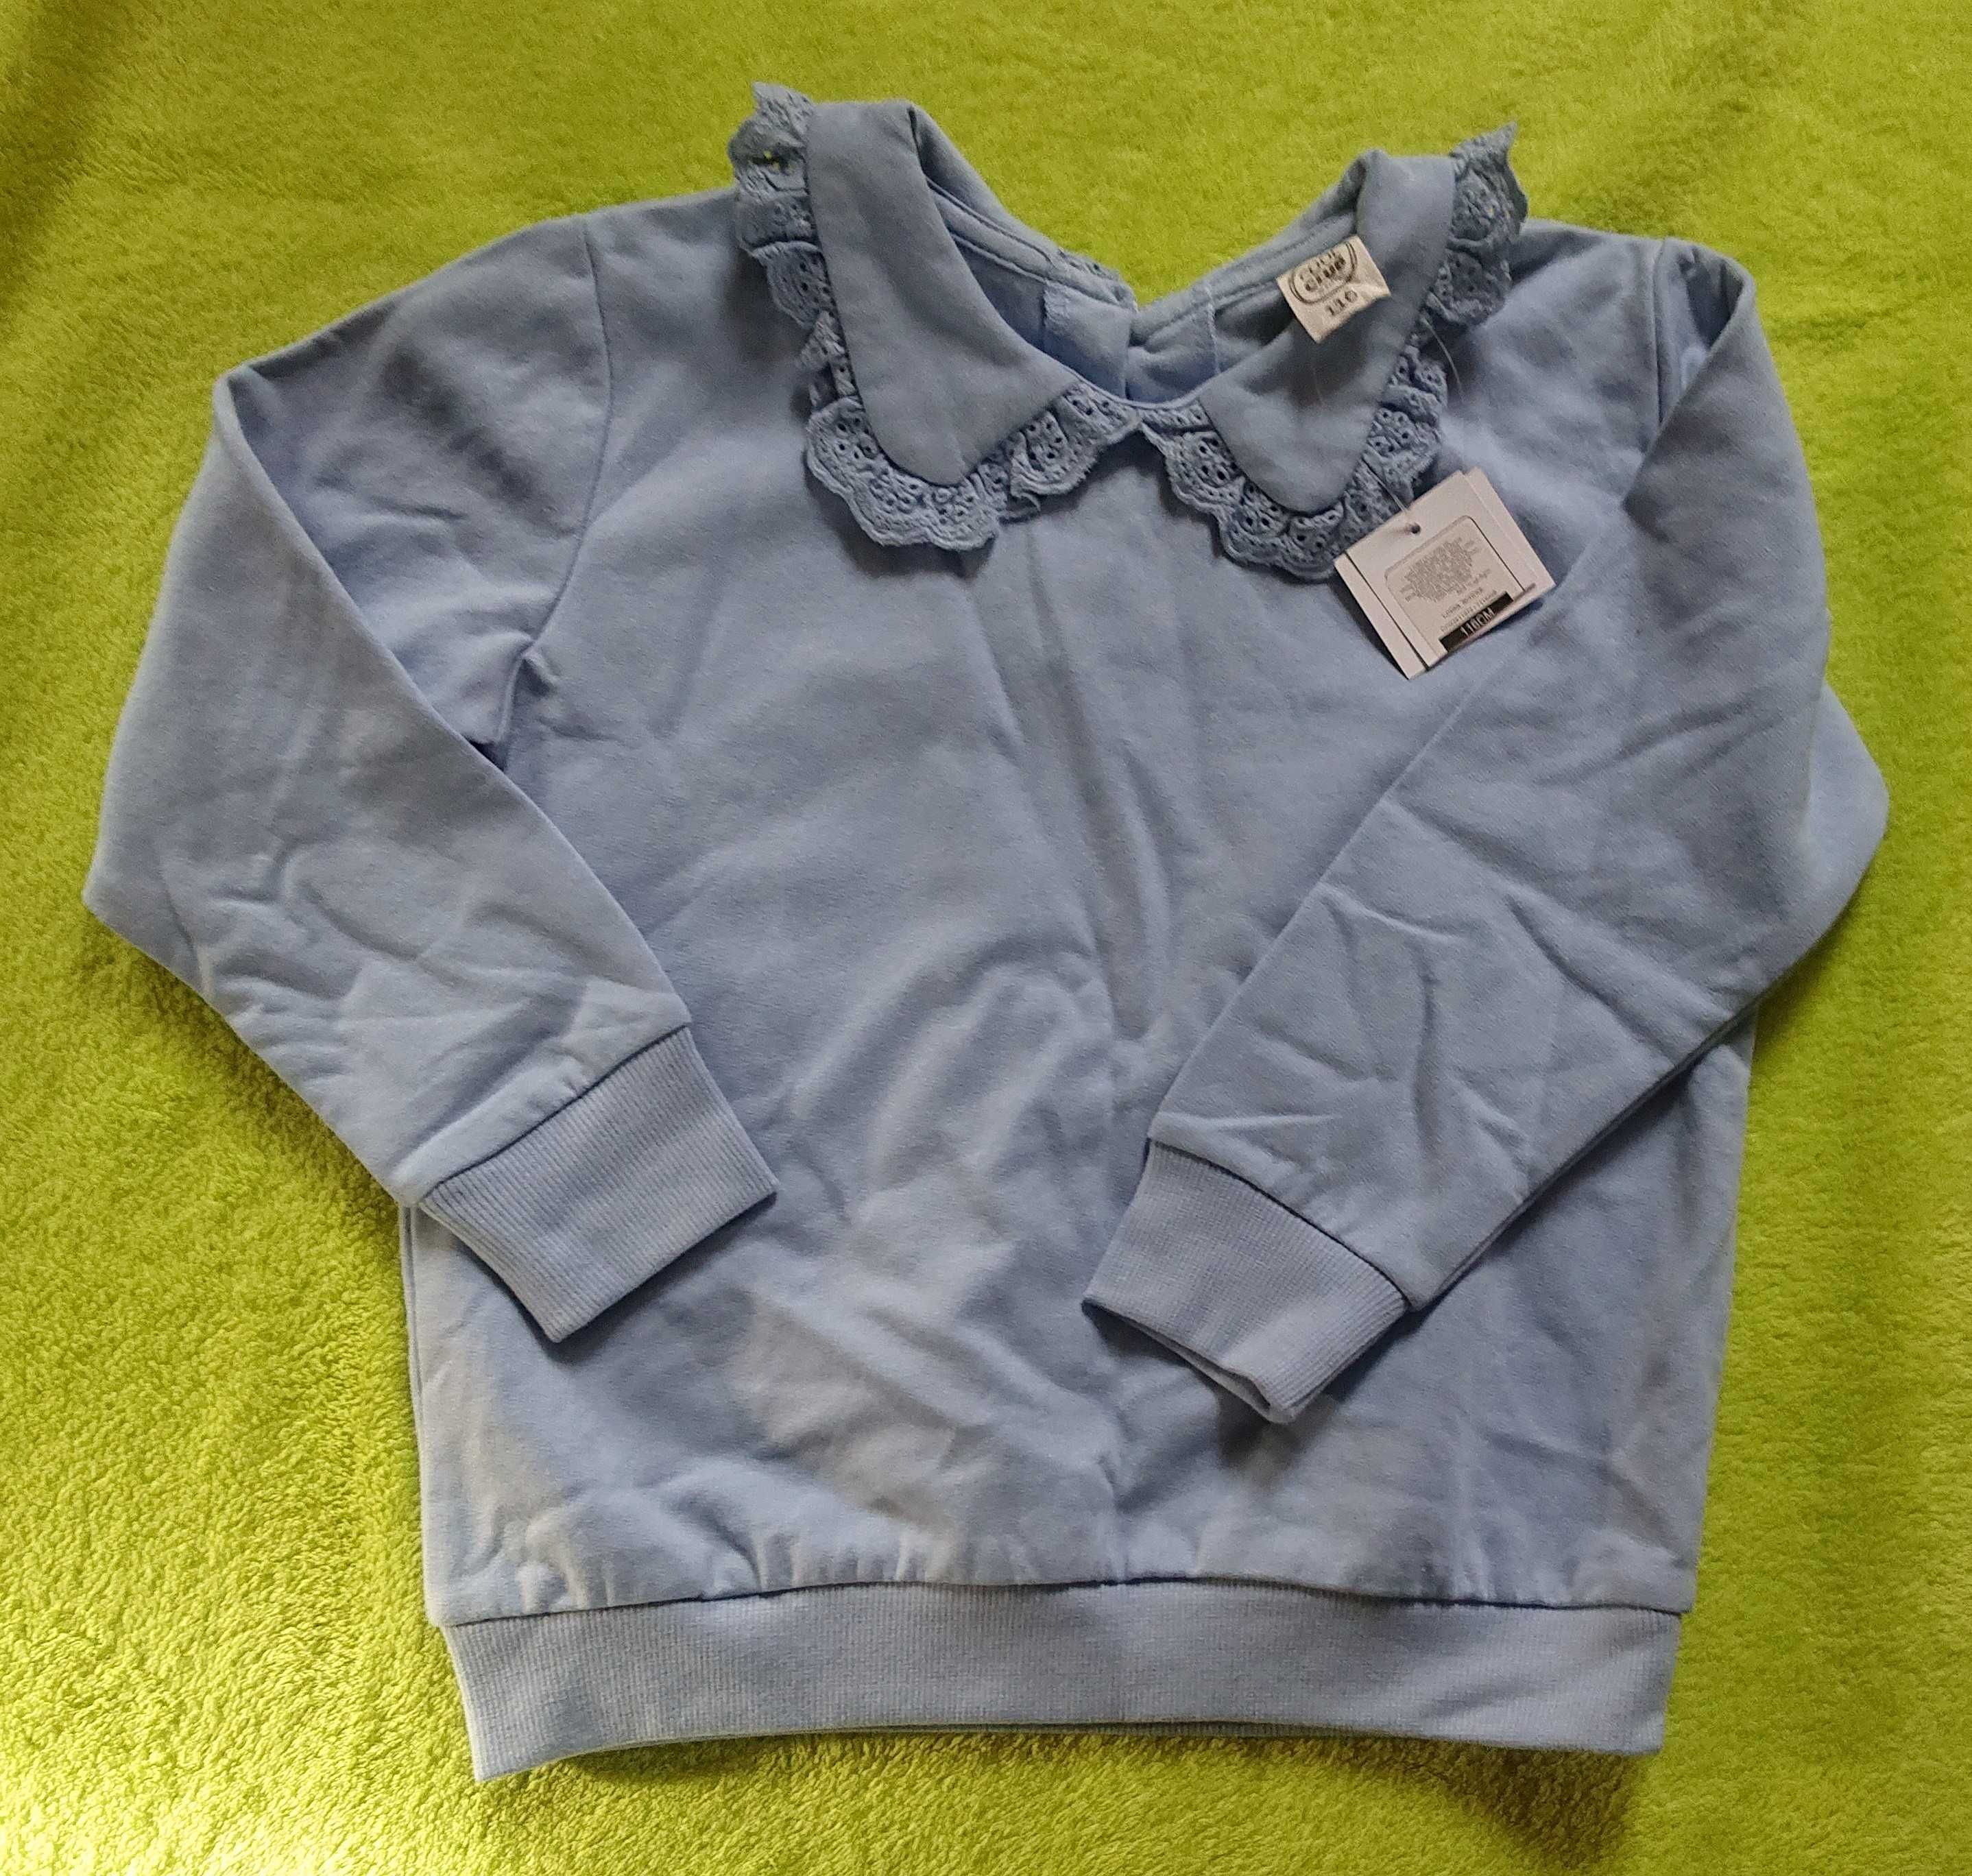 NOWA bluzka CoolClub 116 / Smyk / bluza z kołnierzykiem / błękitna